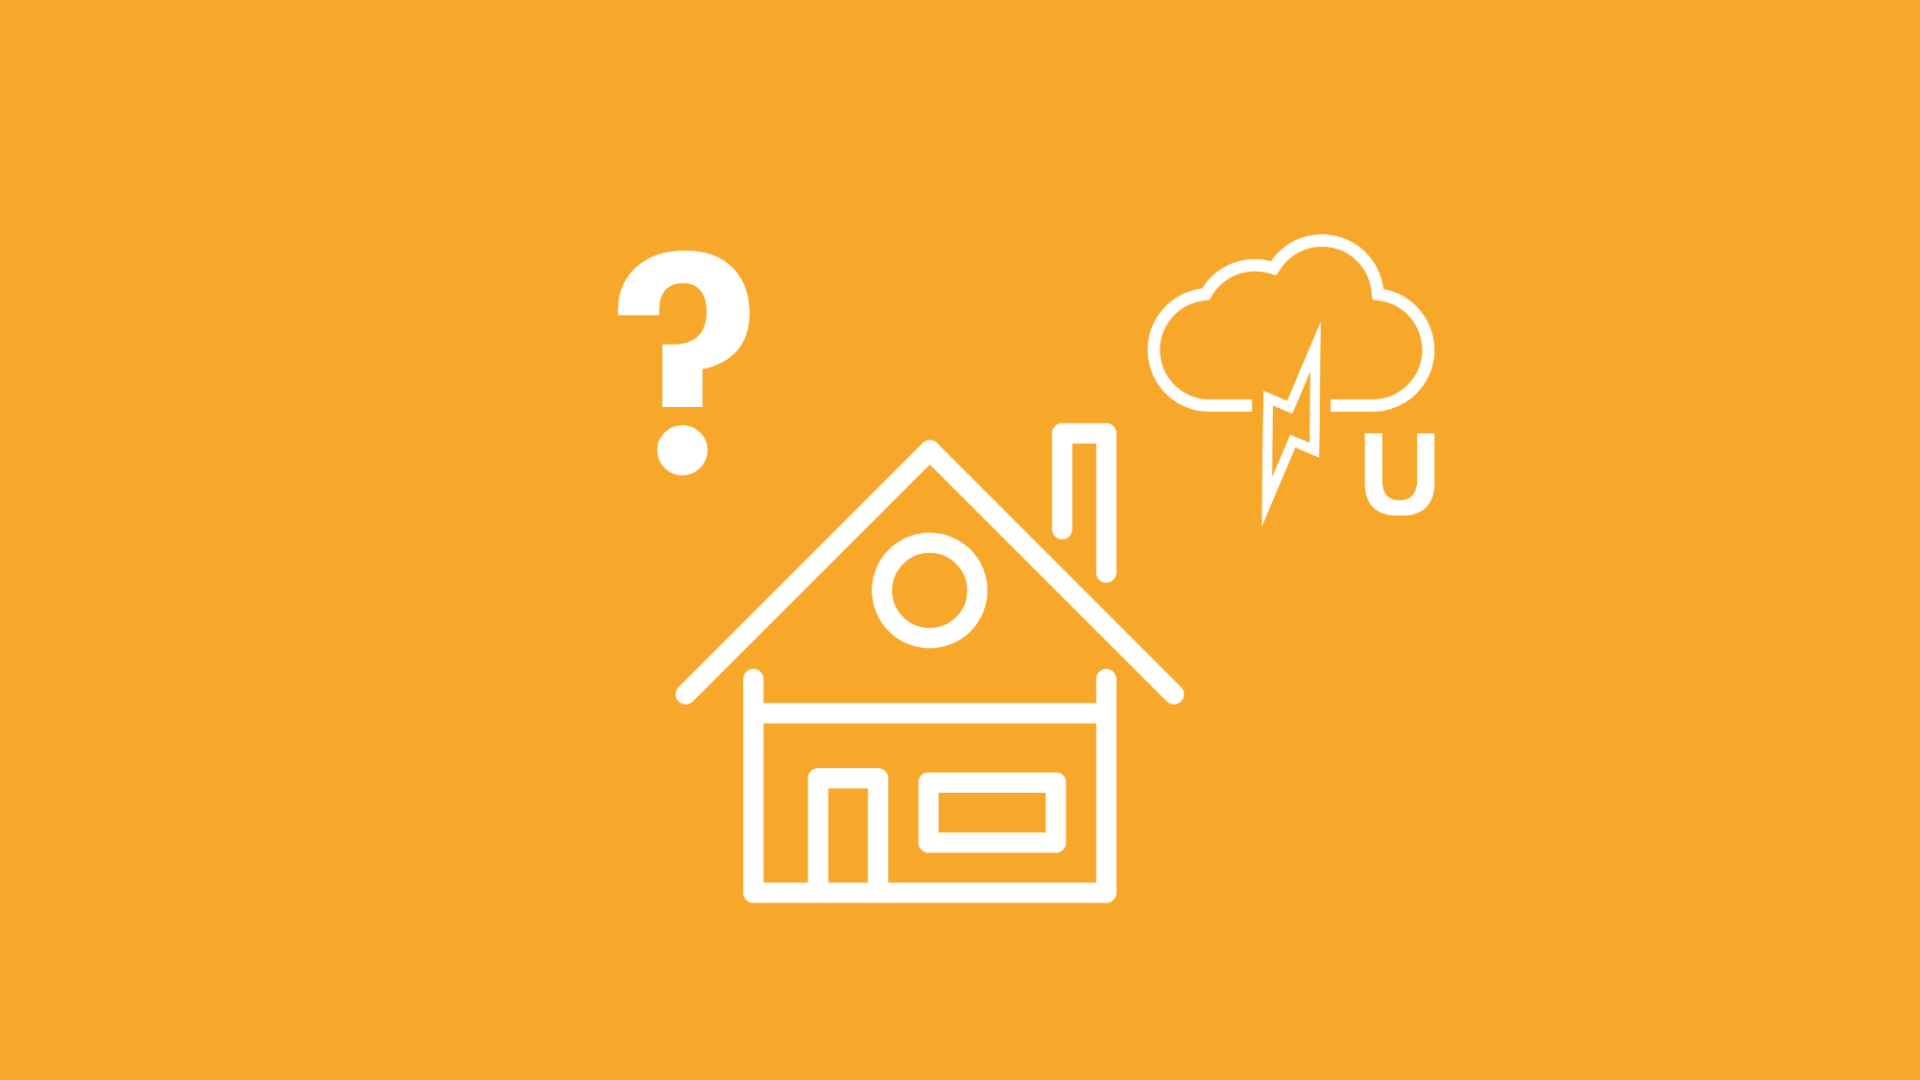 Die Frage wie Überspannungsschäden entstehen wird durch eine Gewitterwolke mit Blitz, das Zeichen für Spannung und ein Fragezeichen über einem Haus dargestellt.